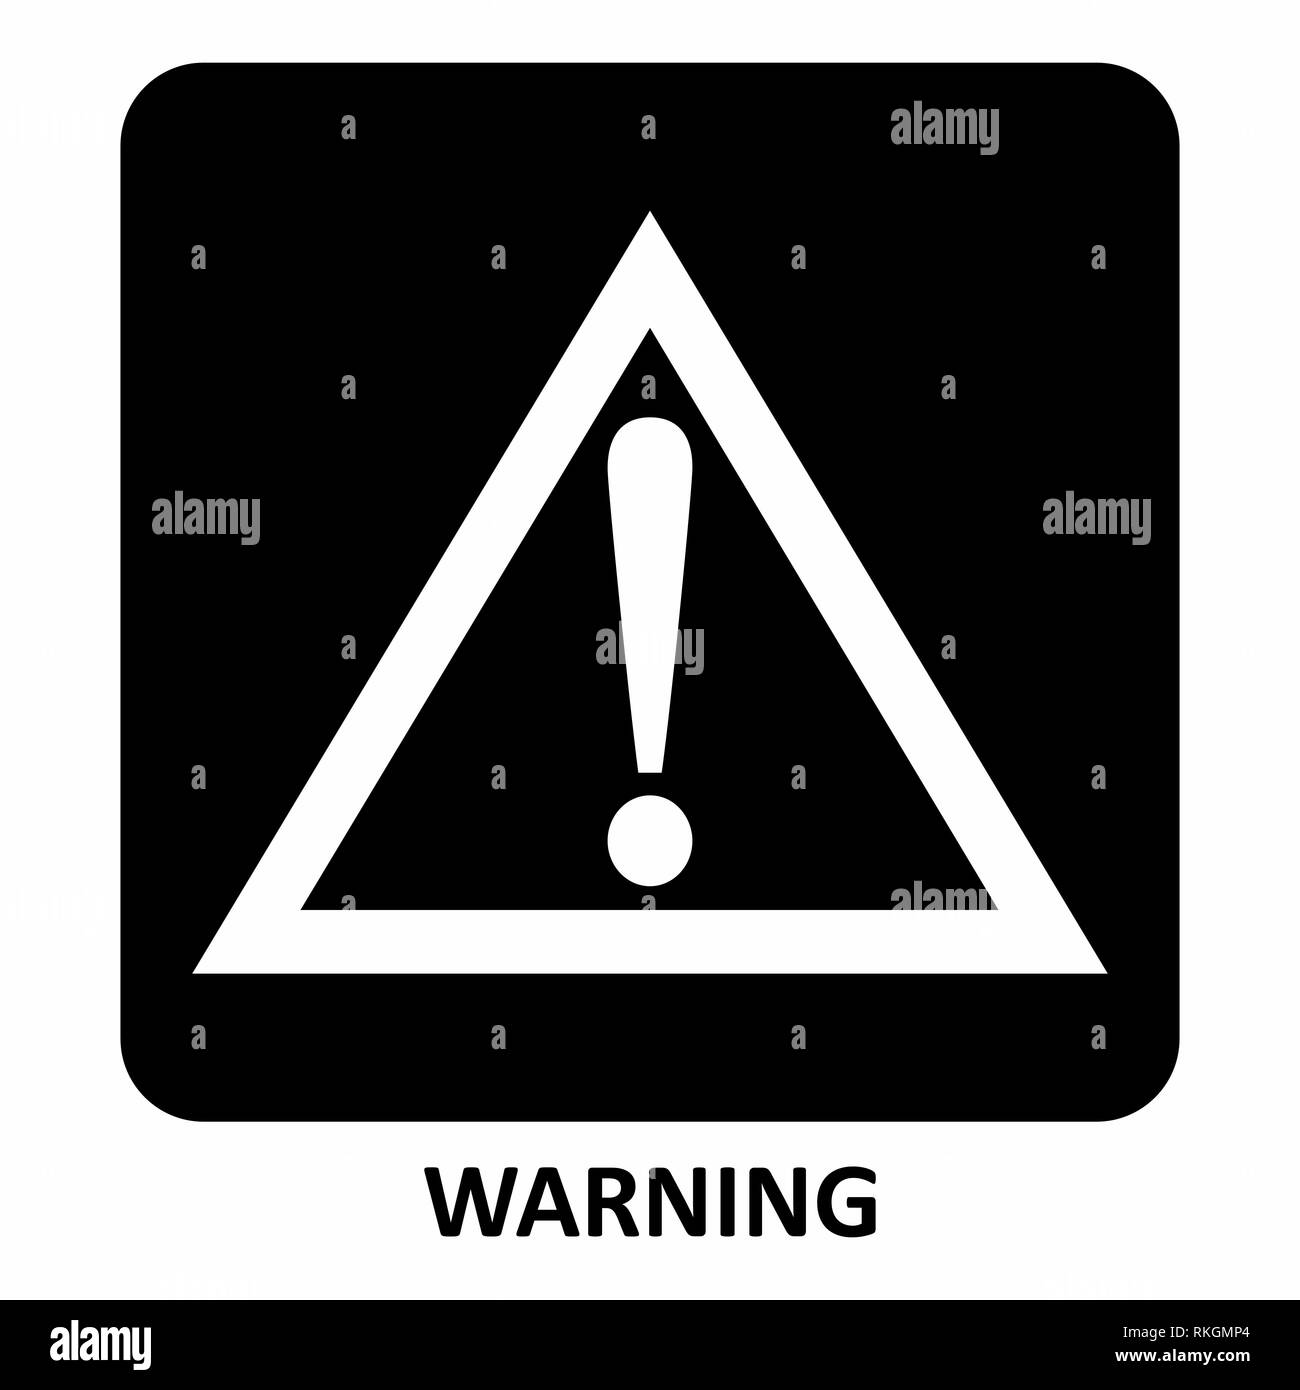 Warning Sign illustration Stock Vector